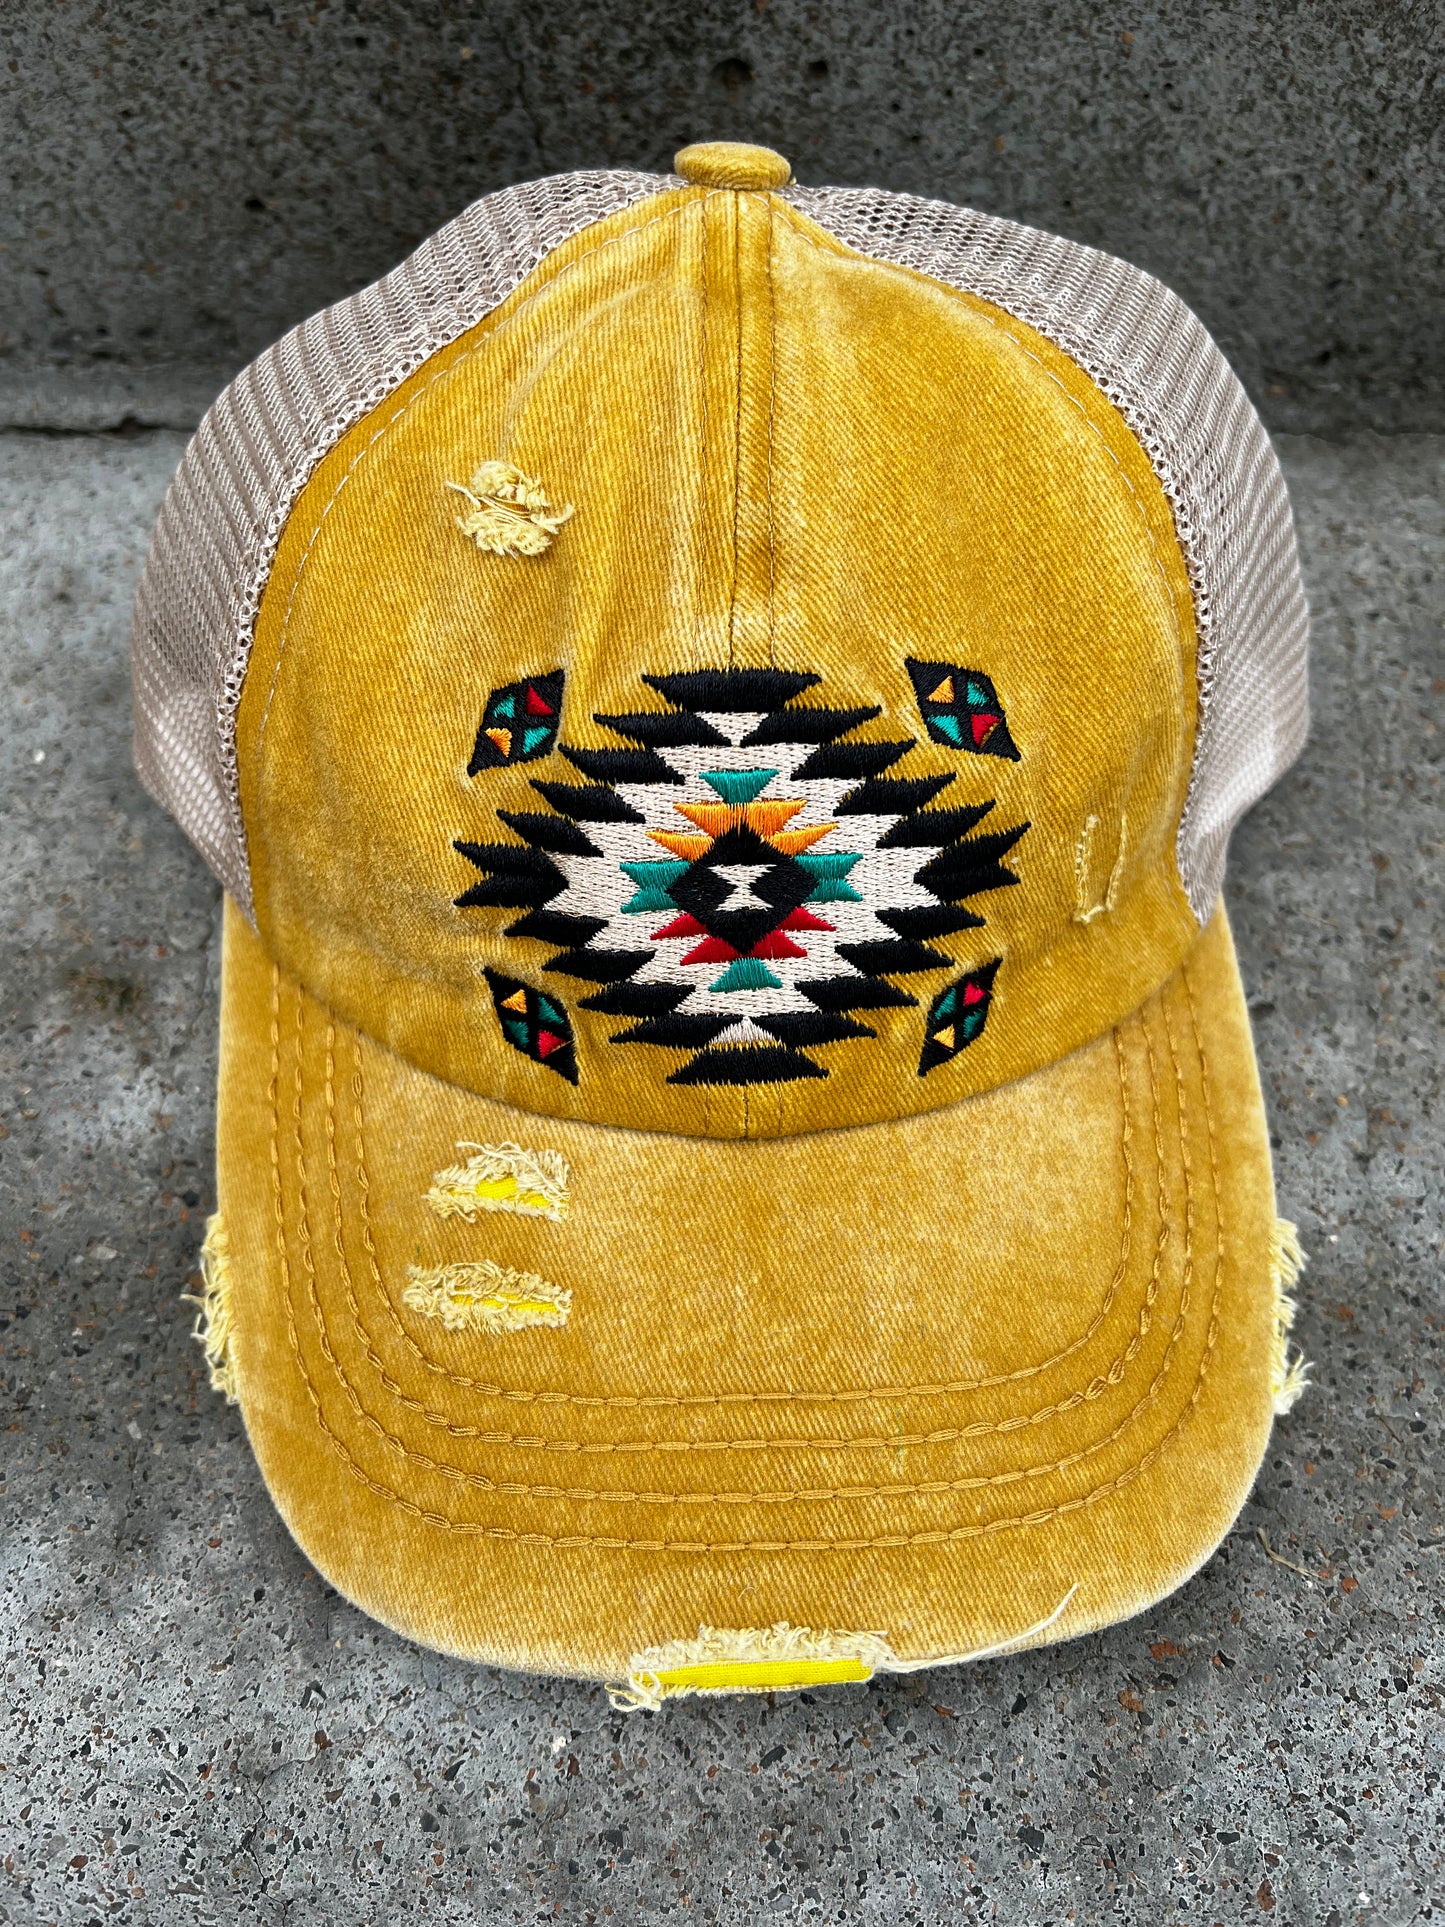 Aztec CC Criss-Cross Caps Asst